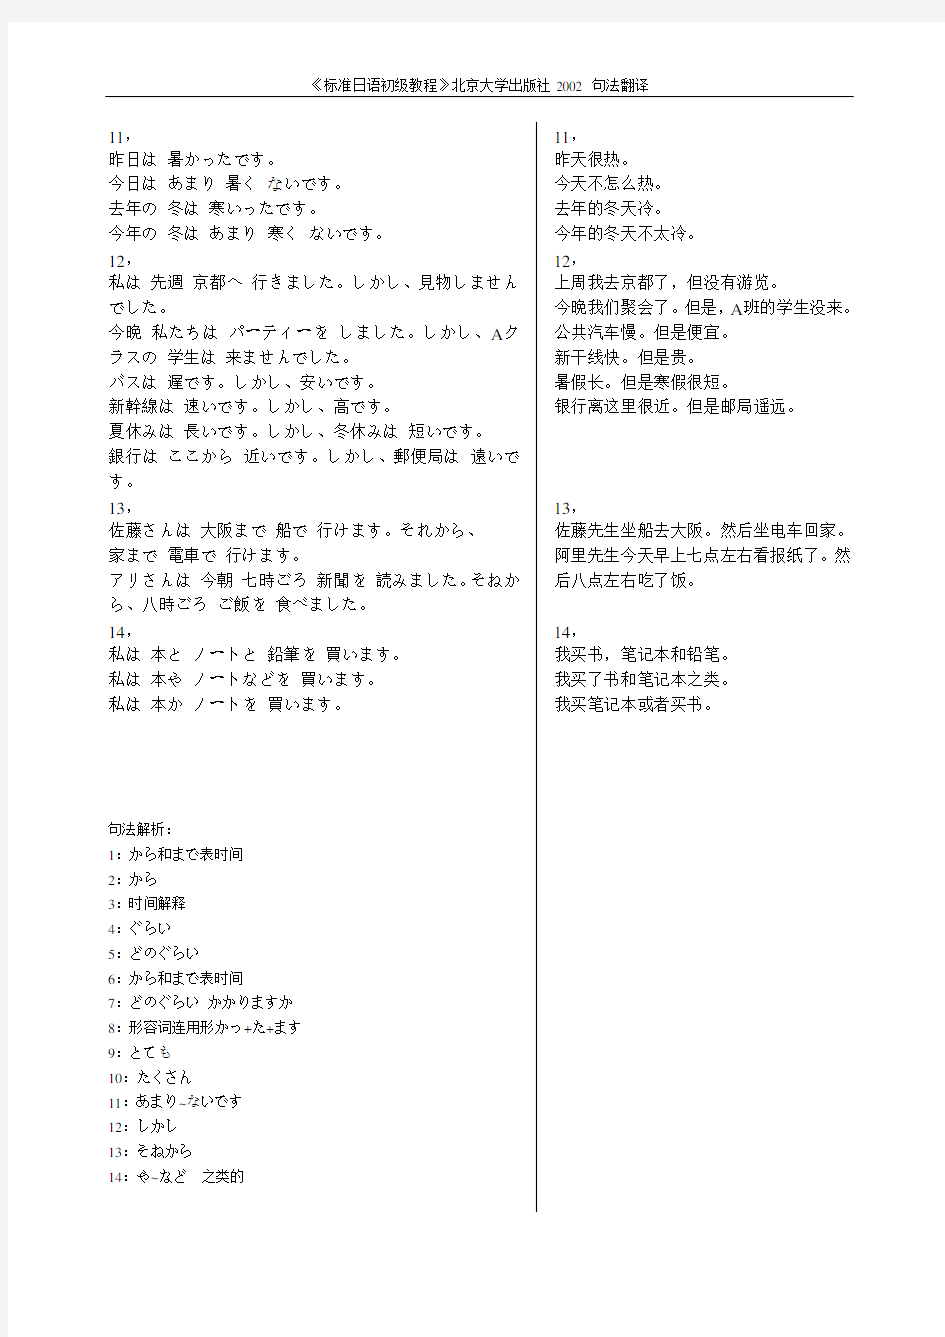 《标准日语初级教程》北京大学出版社2002 句法翻译第05课